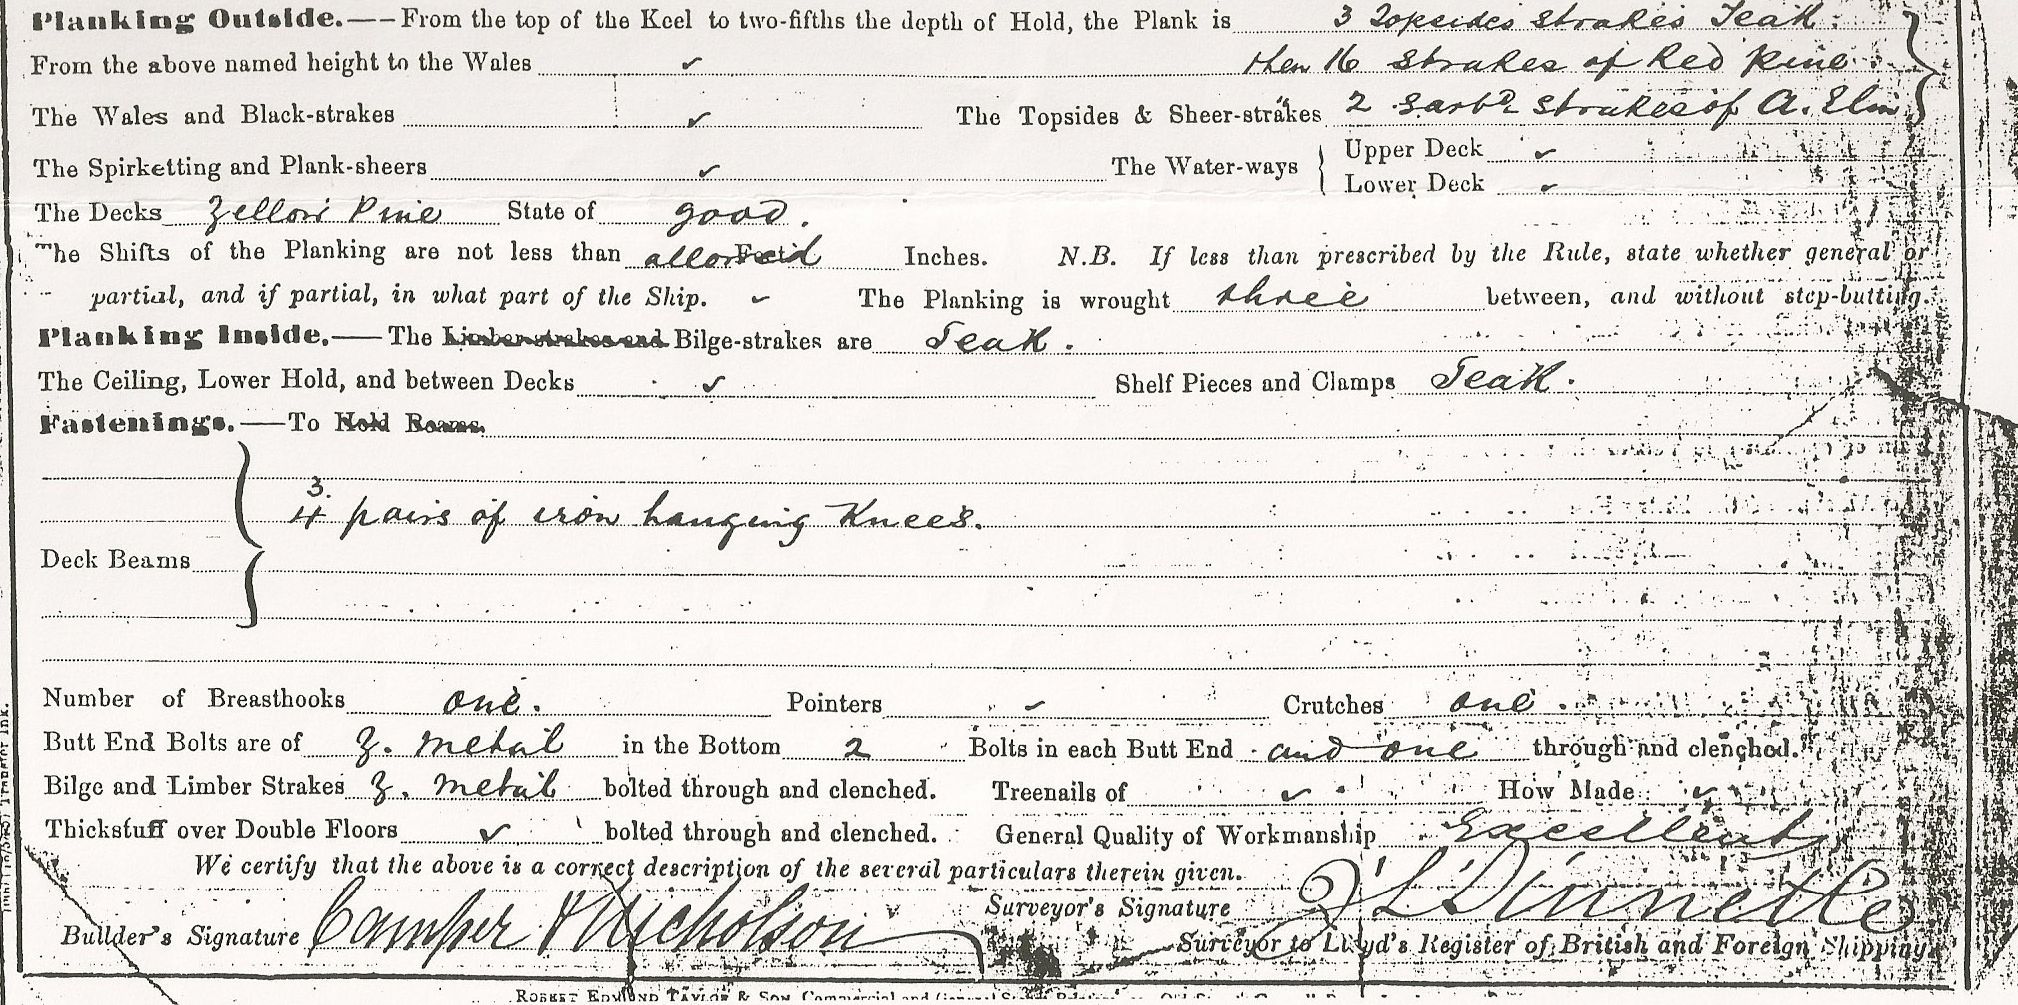 1886 Survey of Partridge : Signature Details